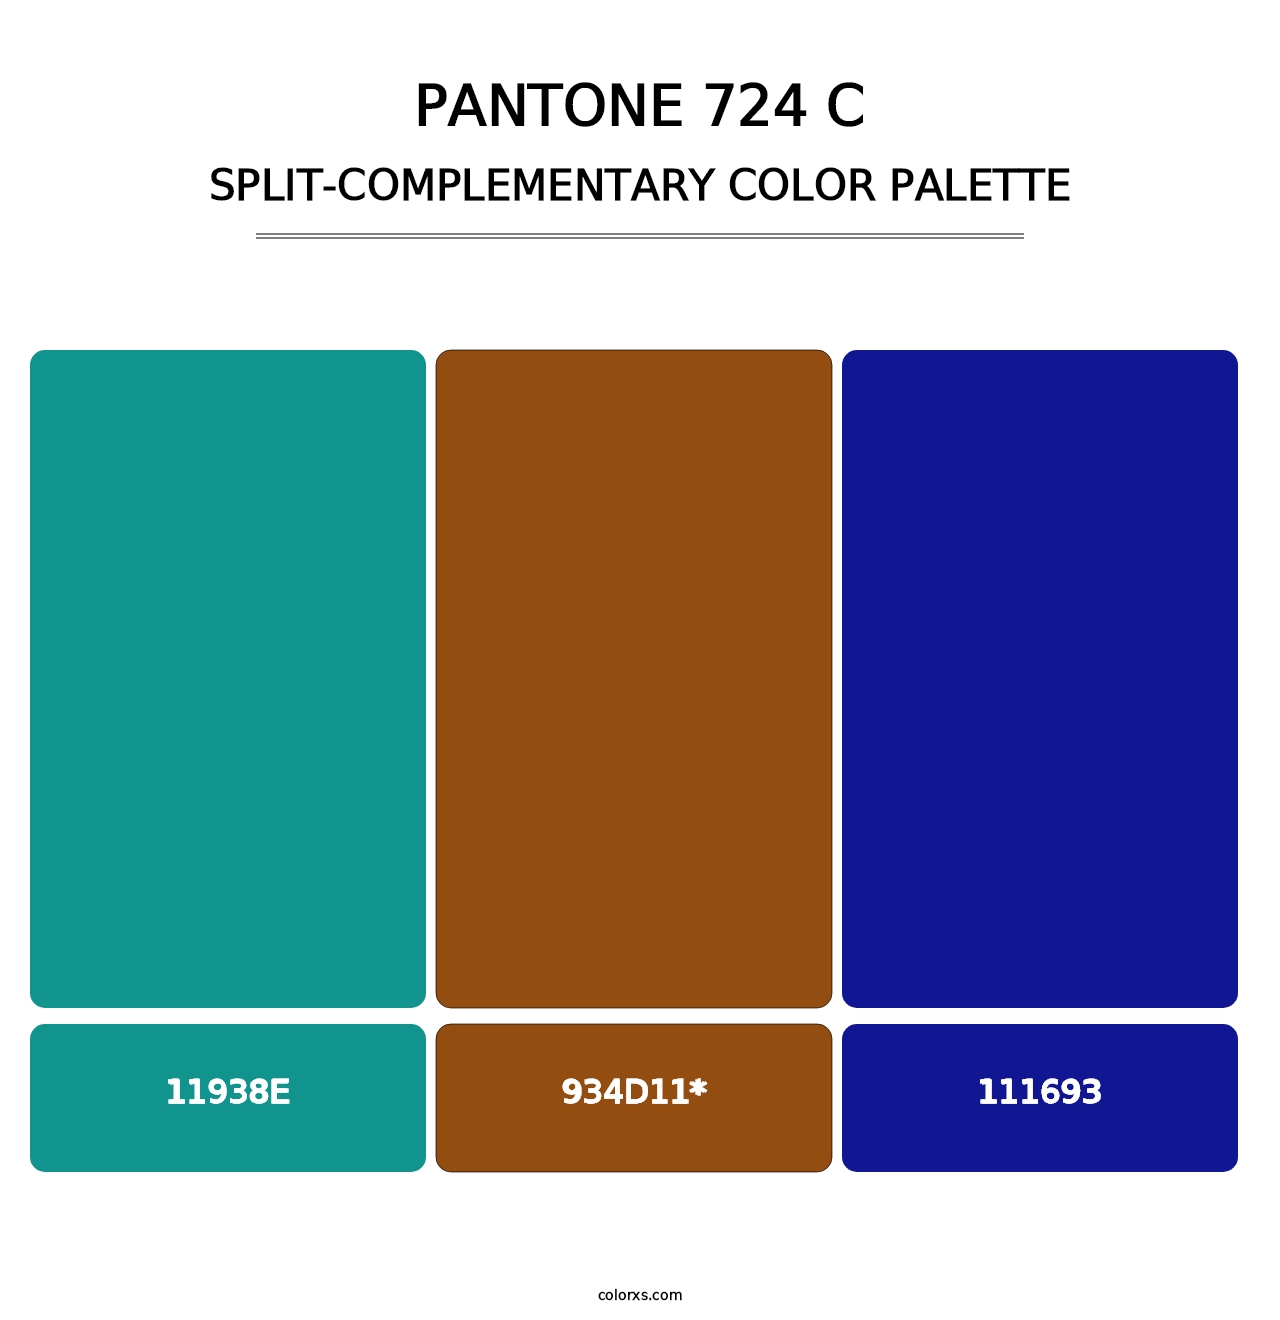 PANTONE 724 C - Split-Complementary Color Palette